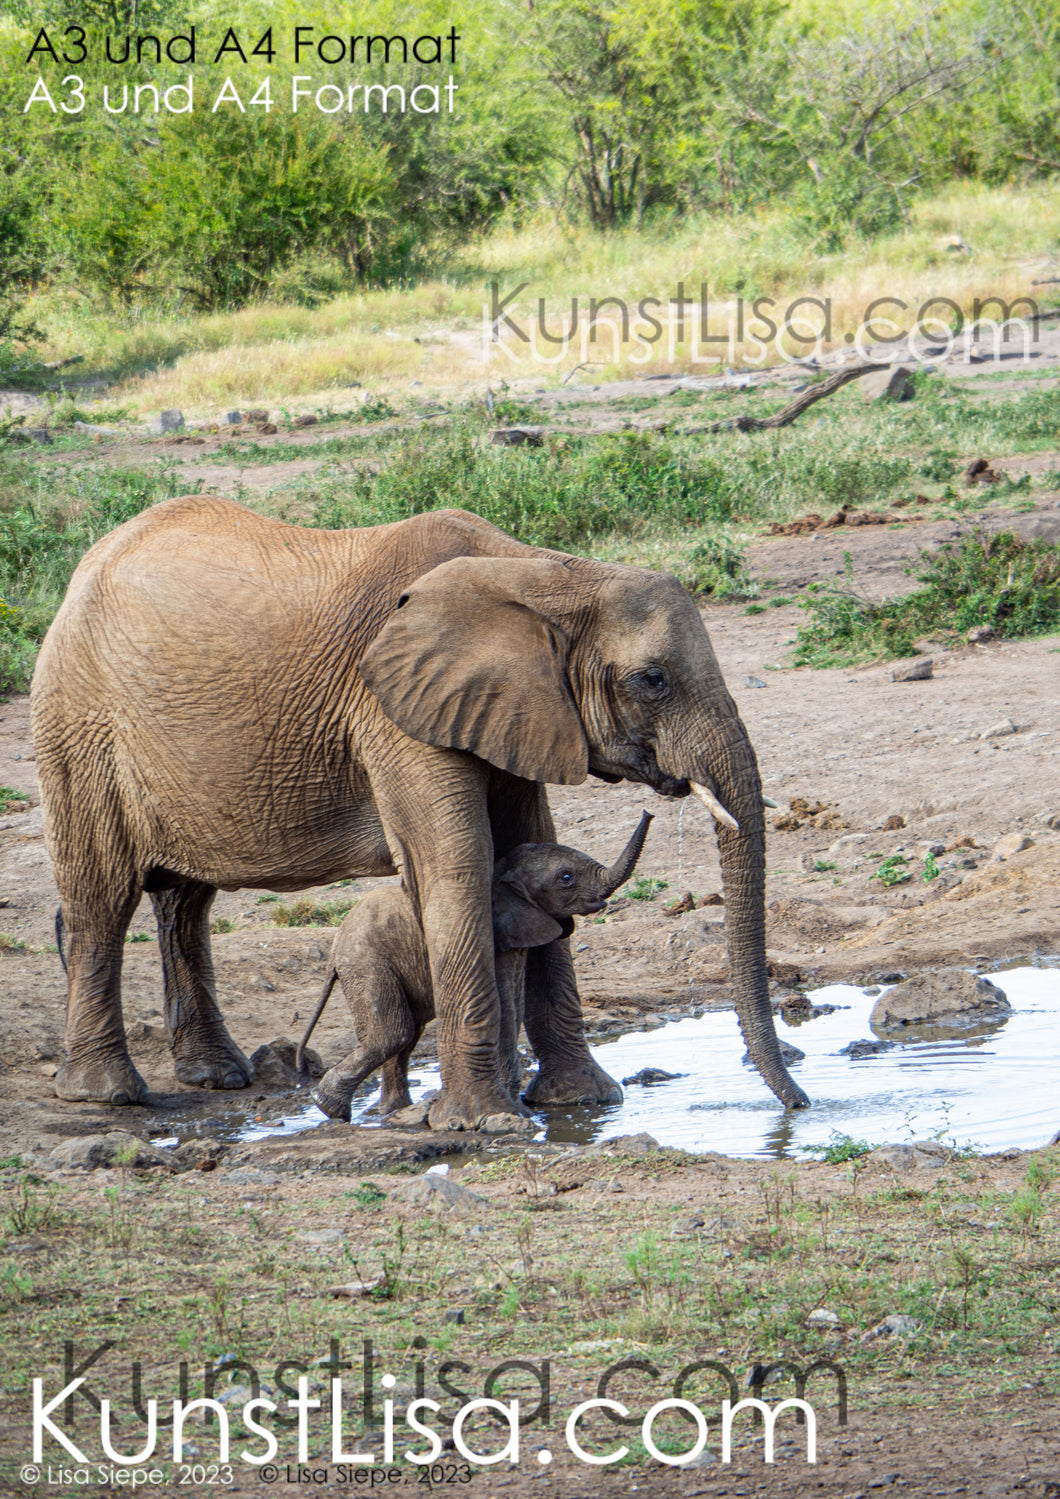 Seitliche-Aufnahme-von-Elefanten-Baby-mit-Mutter-am-Wasserloch-in-Wildnis-in-Südafrika-Format-A3-und-A4